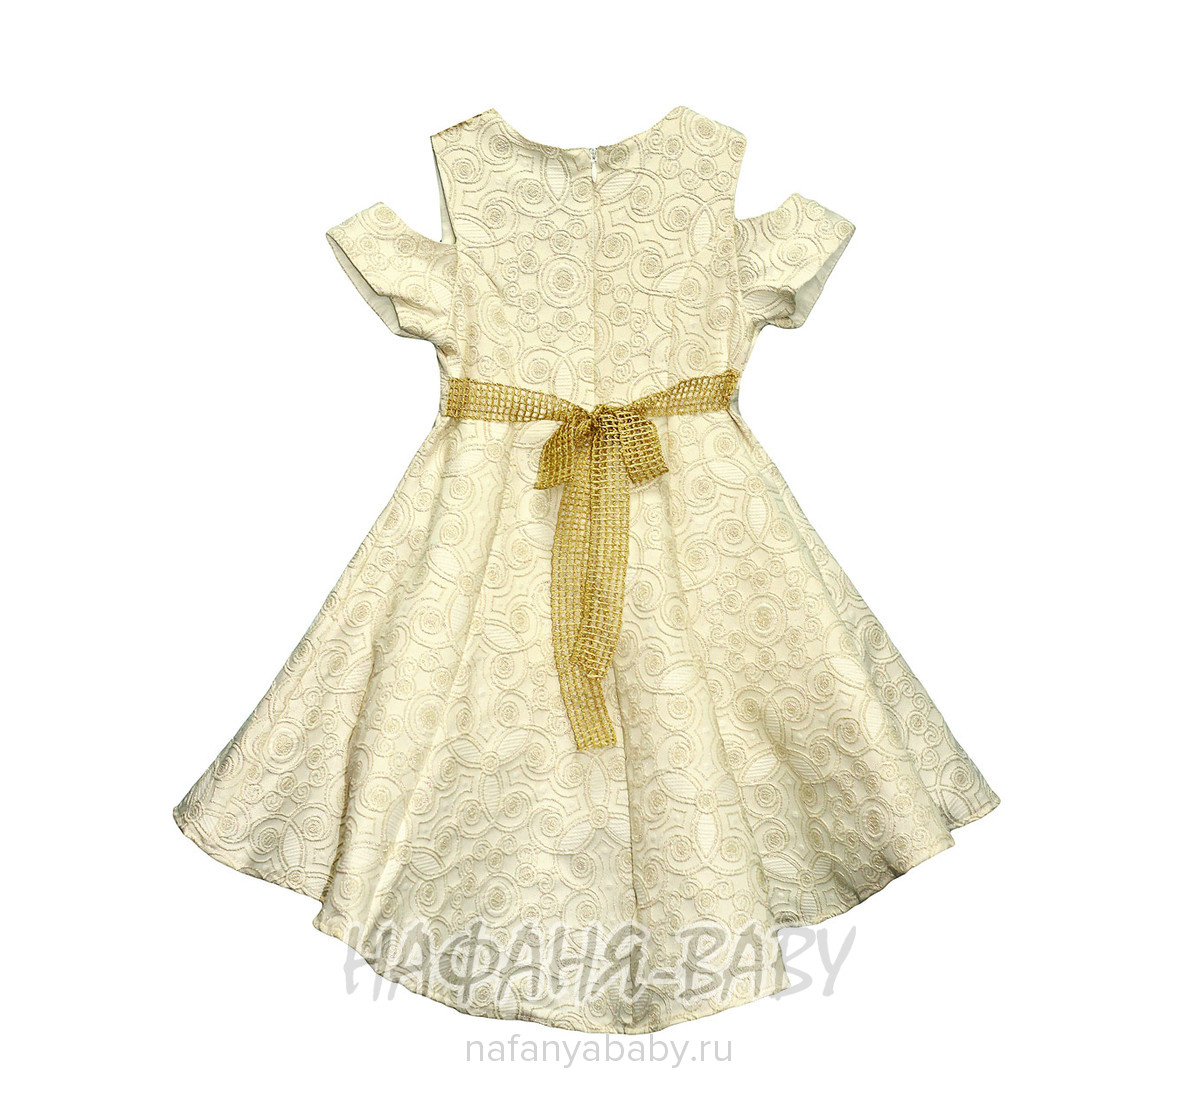 Детское нарядное платье с паетками-перевертышами SOFIA, купить в интернет магазине Нафаня. арт: 2378.